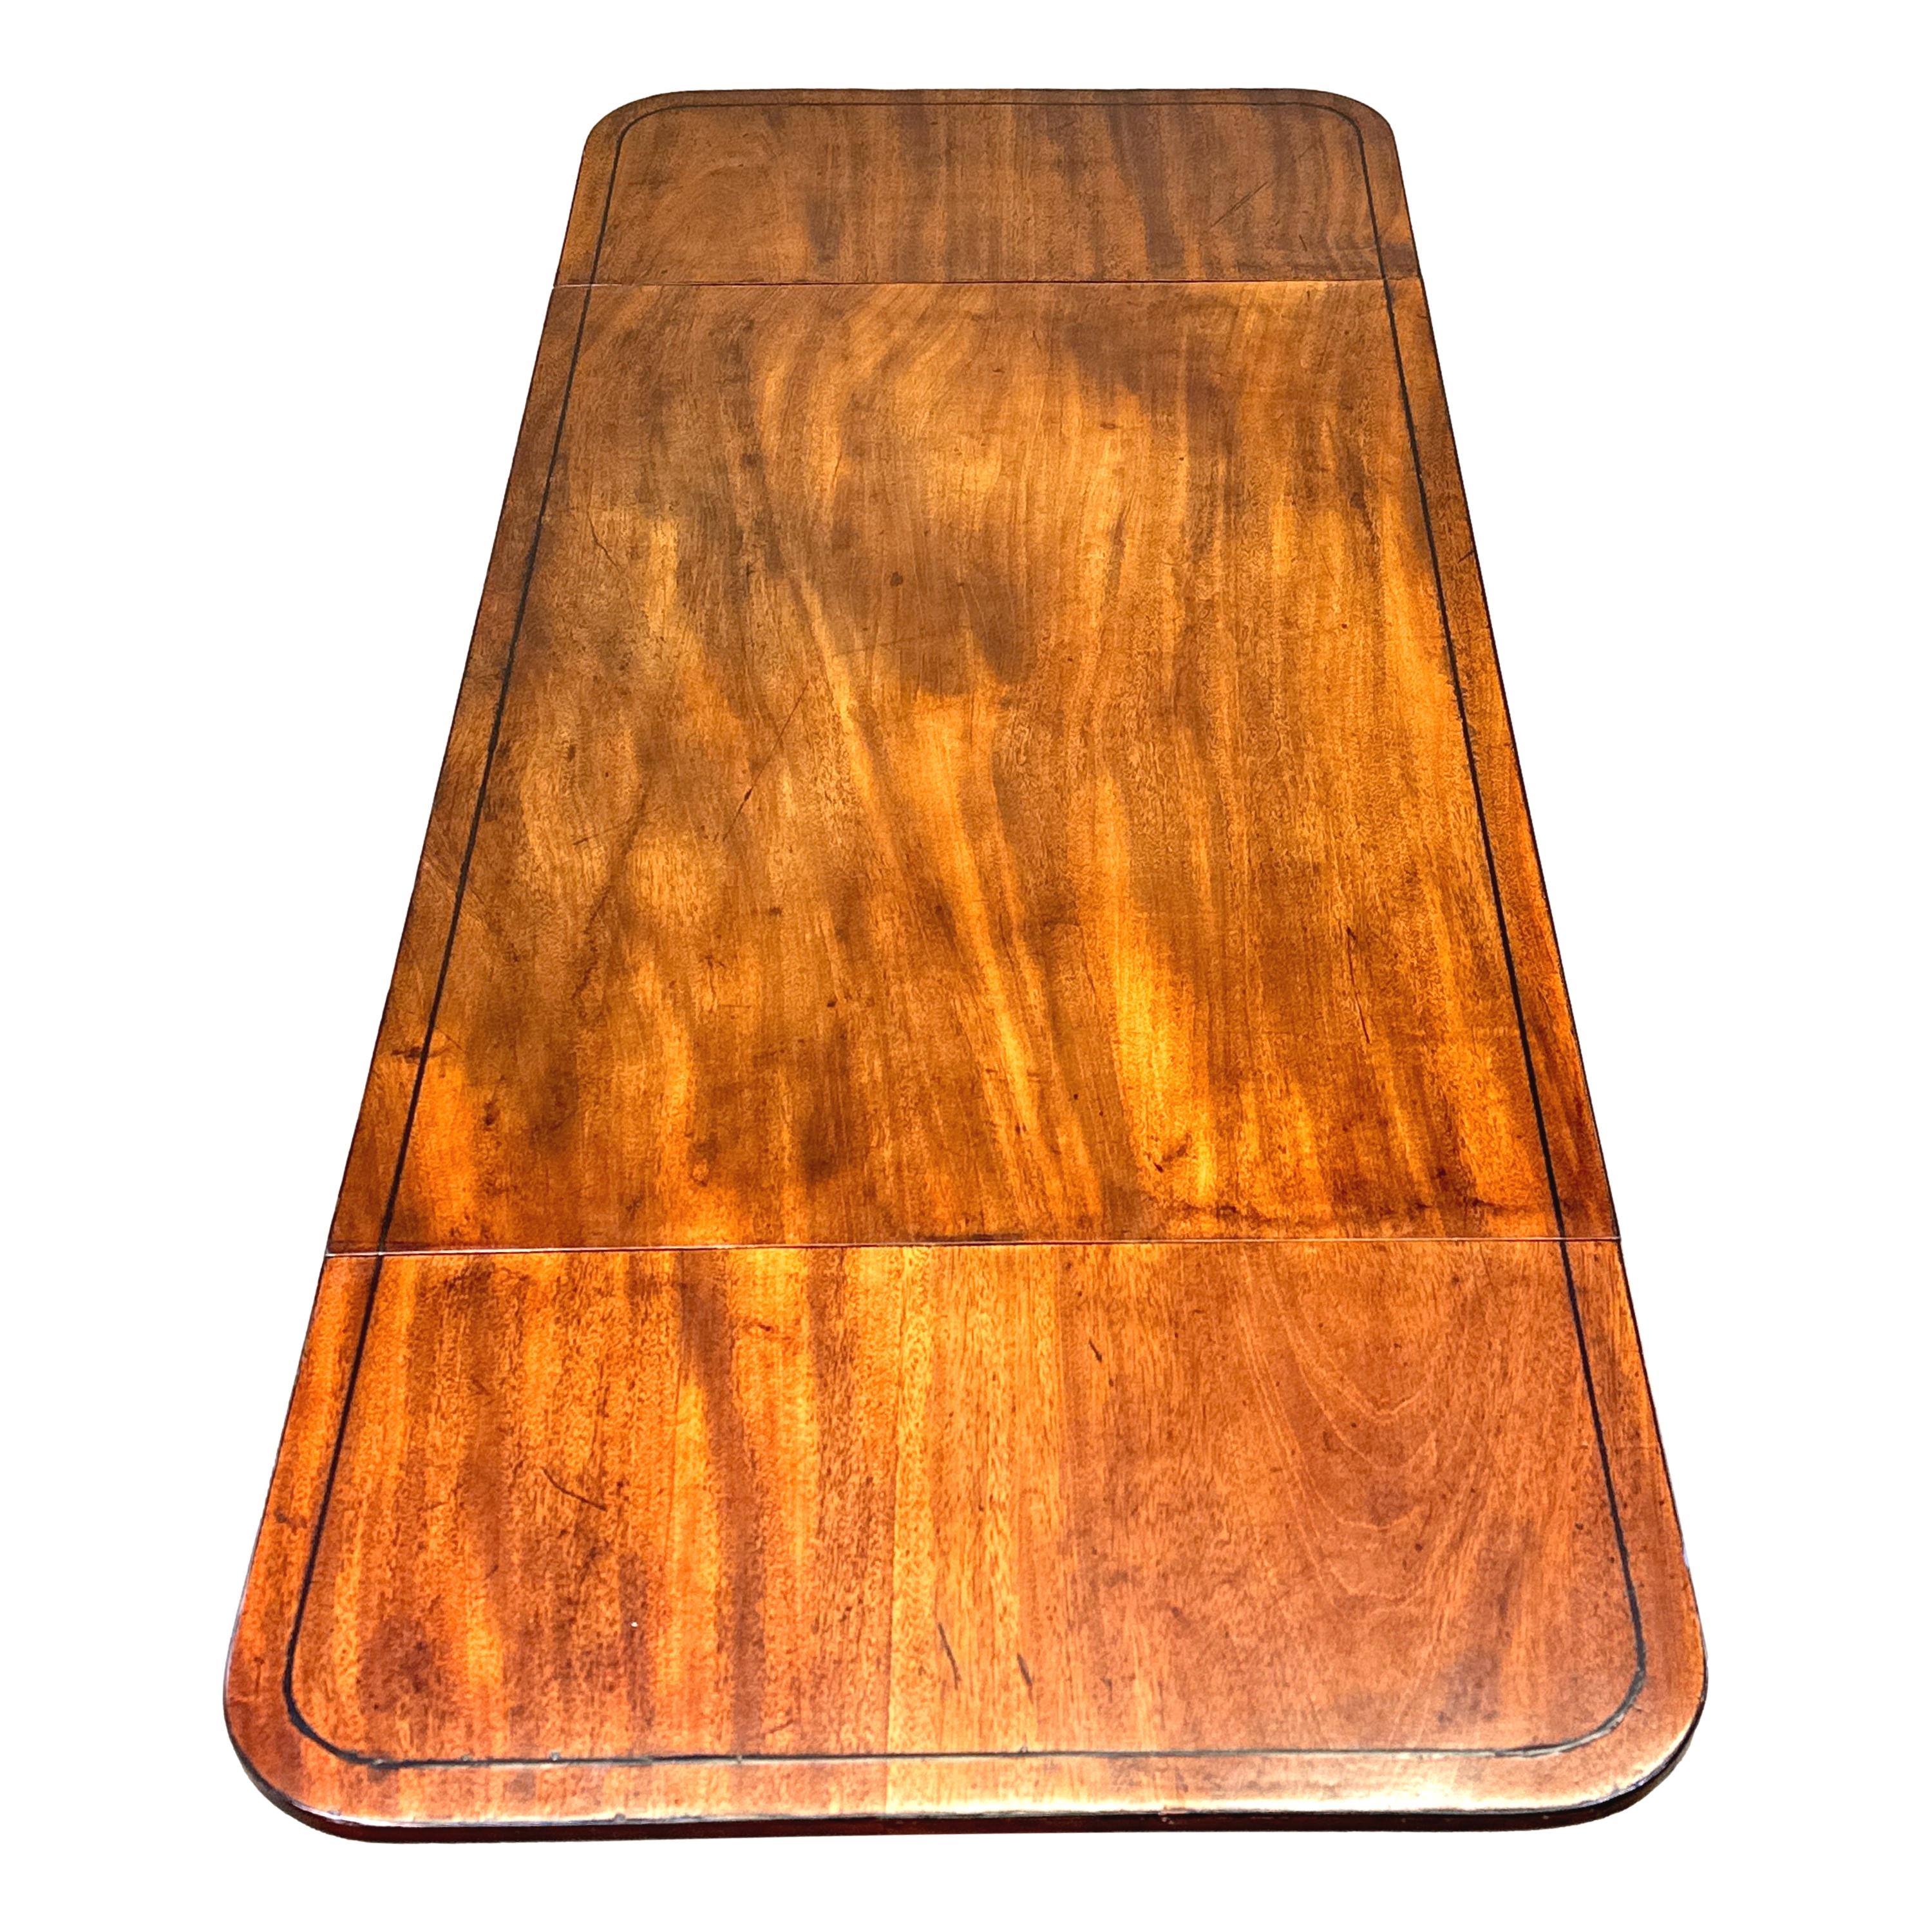 Eine sehr gute Qualität George III Zeitraum Mahagoni-Sofa-Tabelle, von seltenen Diminutive Proportionen, mit gut geformten rechteckigen Top mit Drop Klappe an jedem Ende, über eine lange Schublade und eine falsche Schublade auf der Rückseite mit